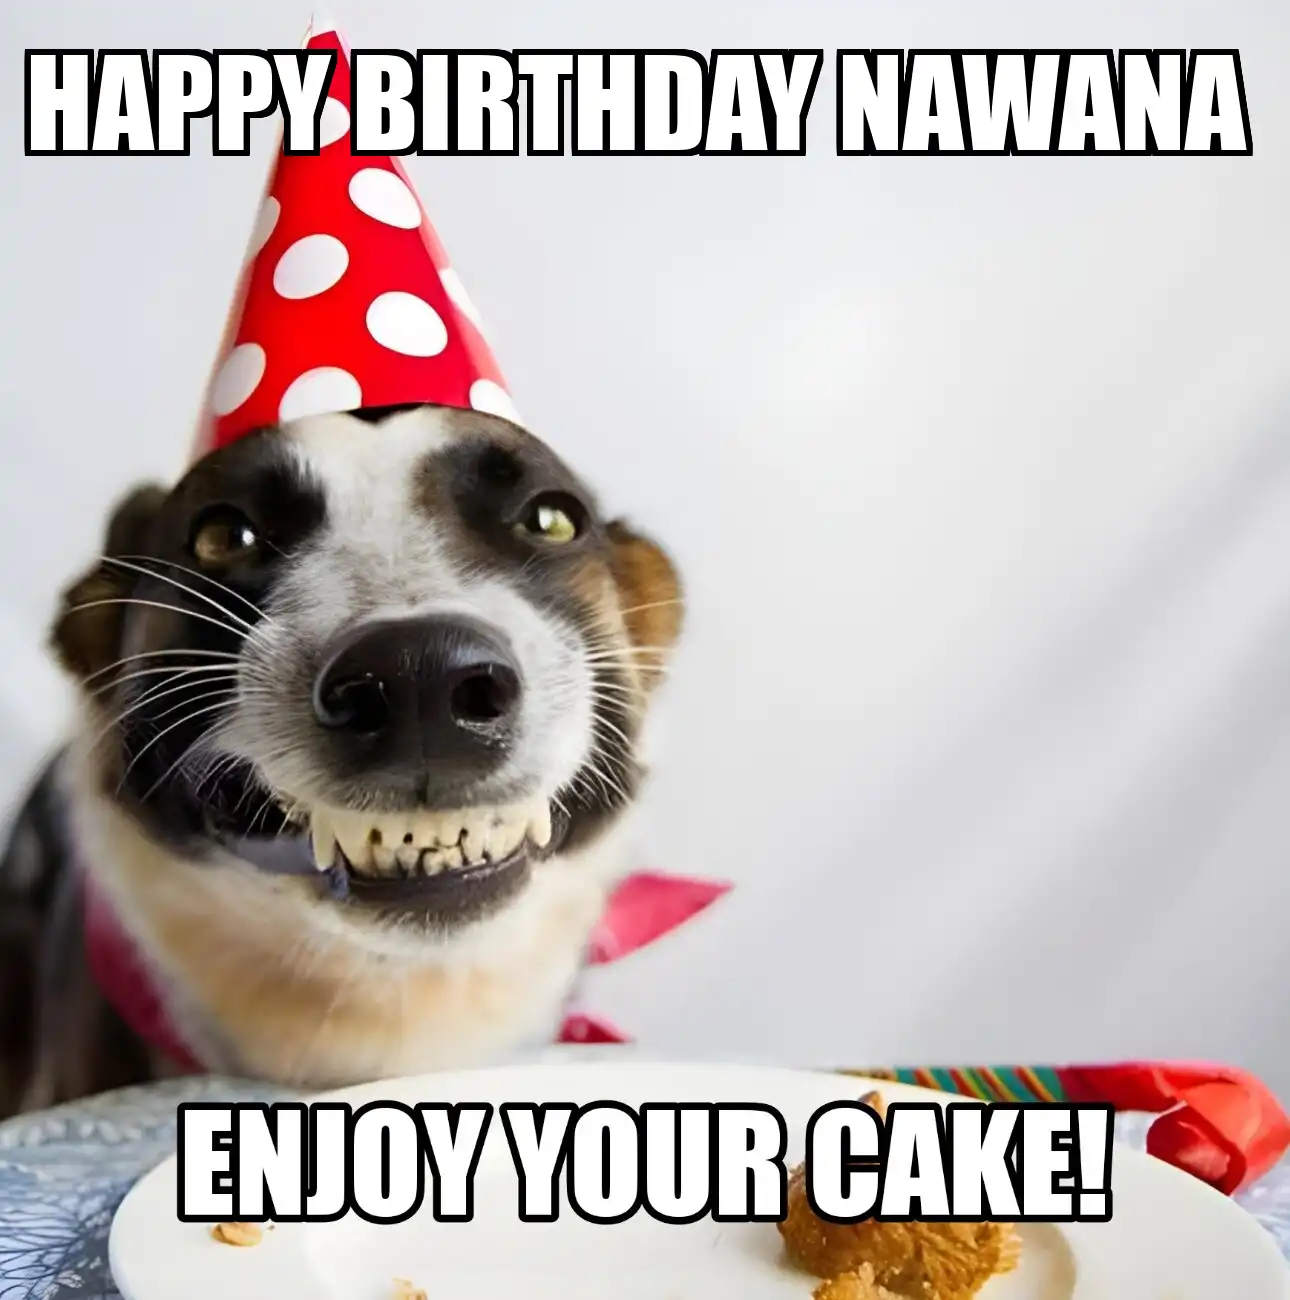 Happy Birthday Nawana Enjoy Your Cake Dog Meme